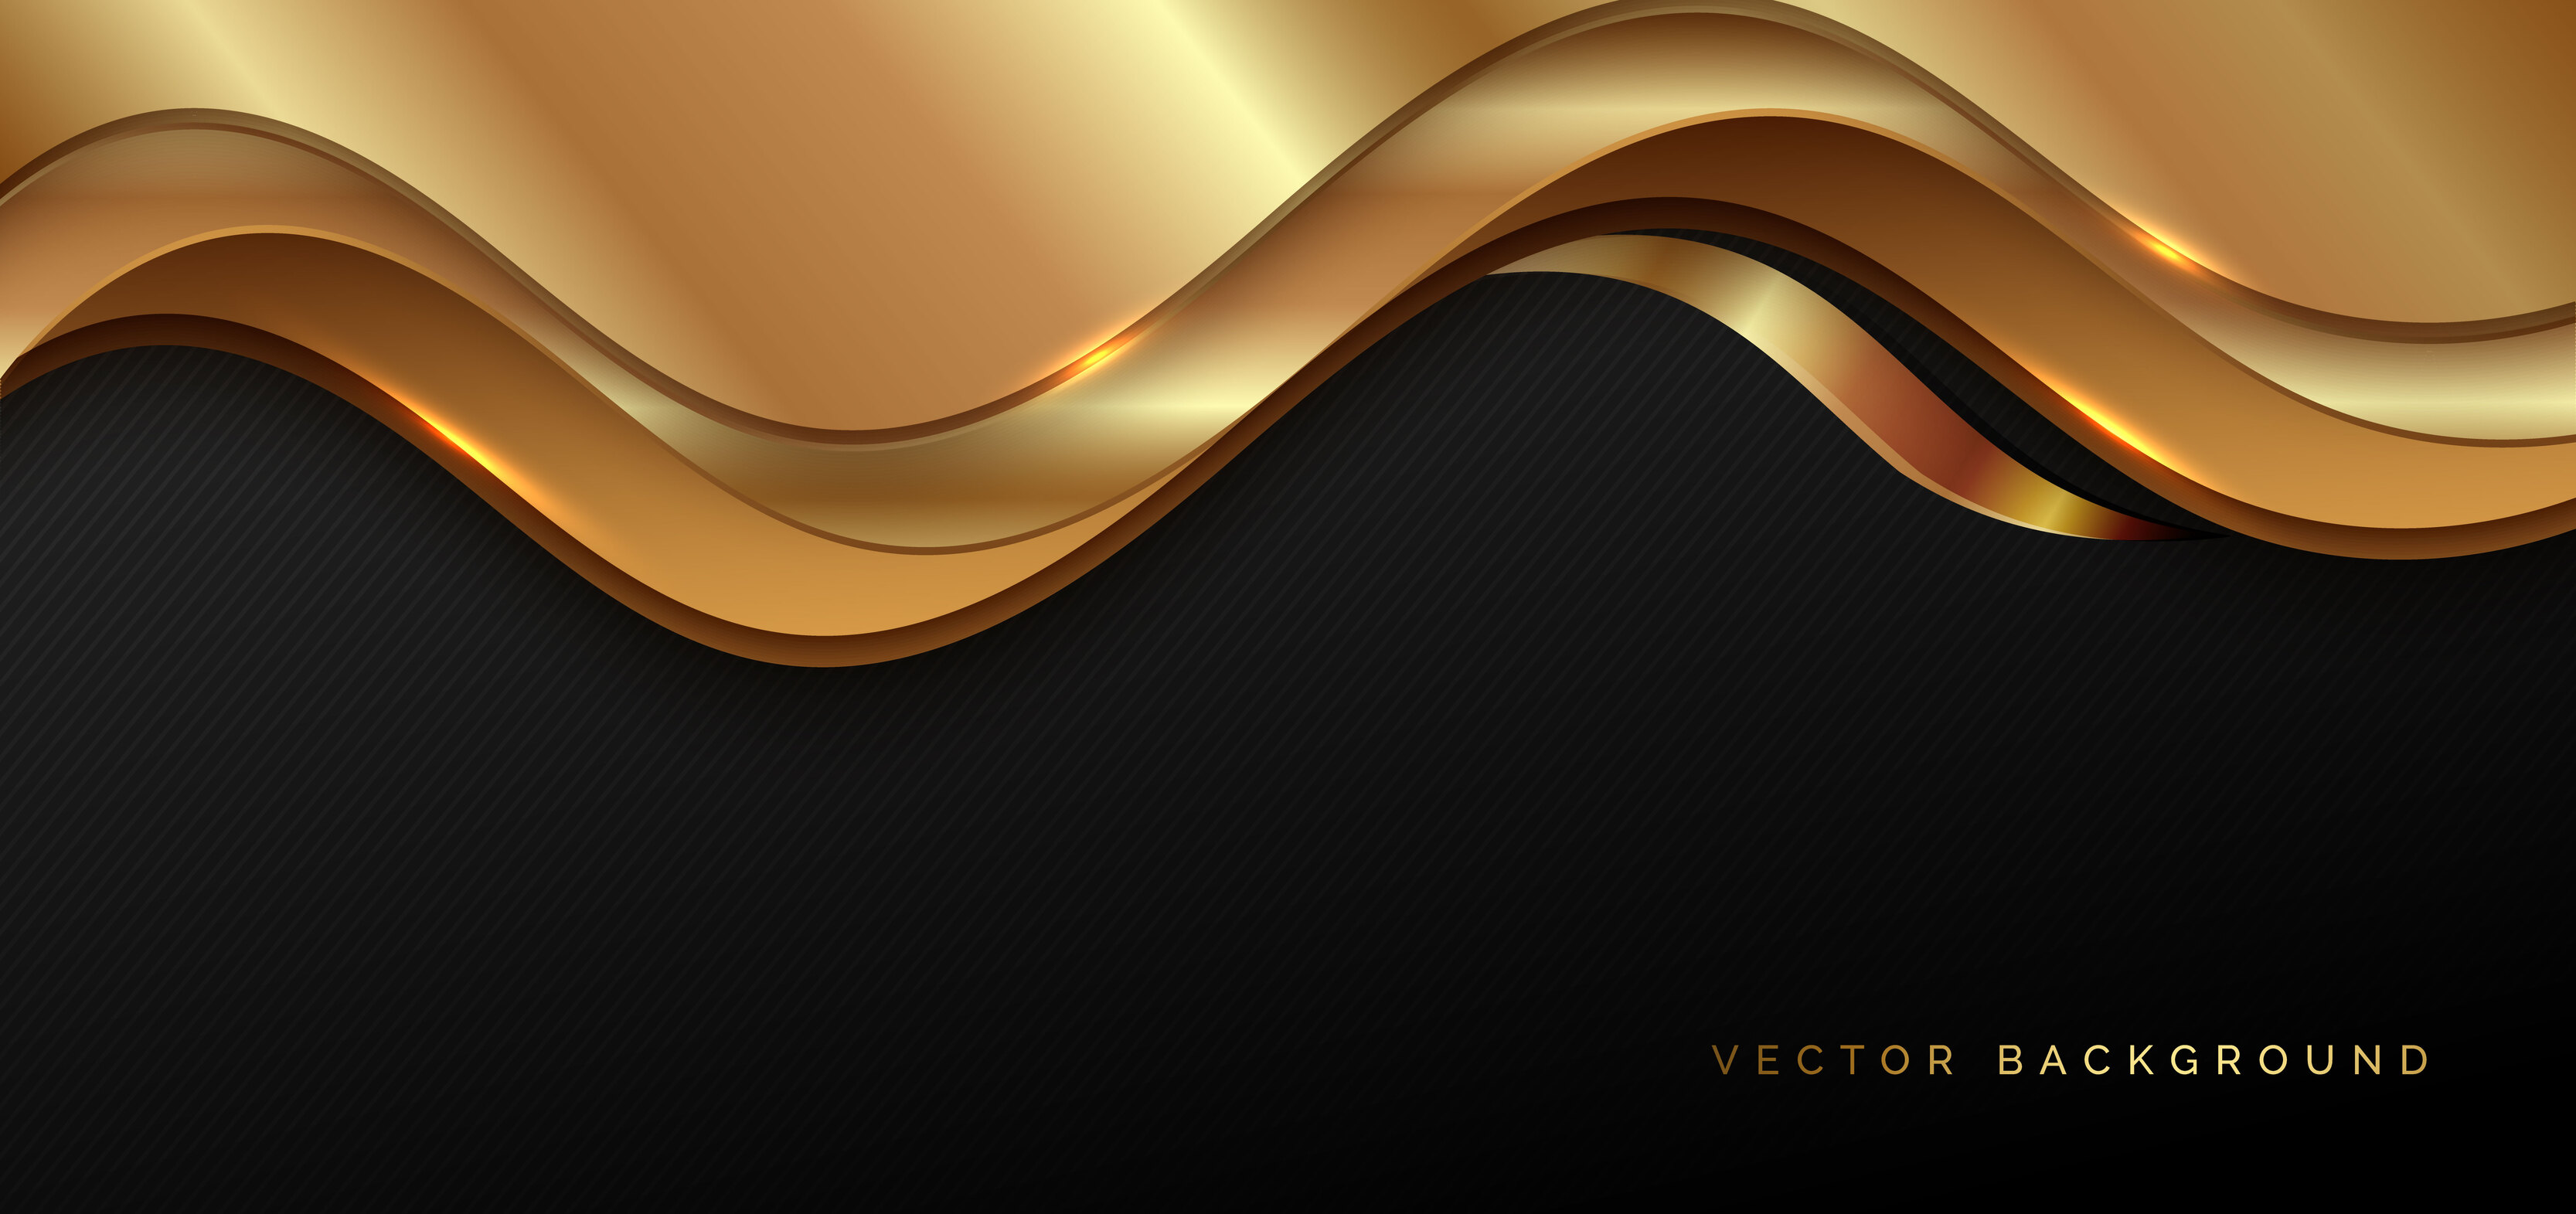 Abstract luxury 3d background gold elegant line on wave shape: Hình nền vàng trừu tượng này sẽ đứng đằng sau nét sang trọng của bạn. Khám phá nó ngay để tạo nên một không gian tràn đầy nghệ thuật. 